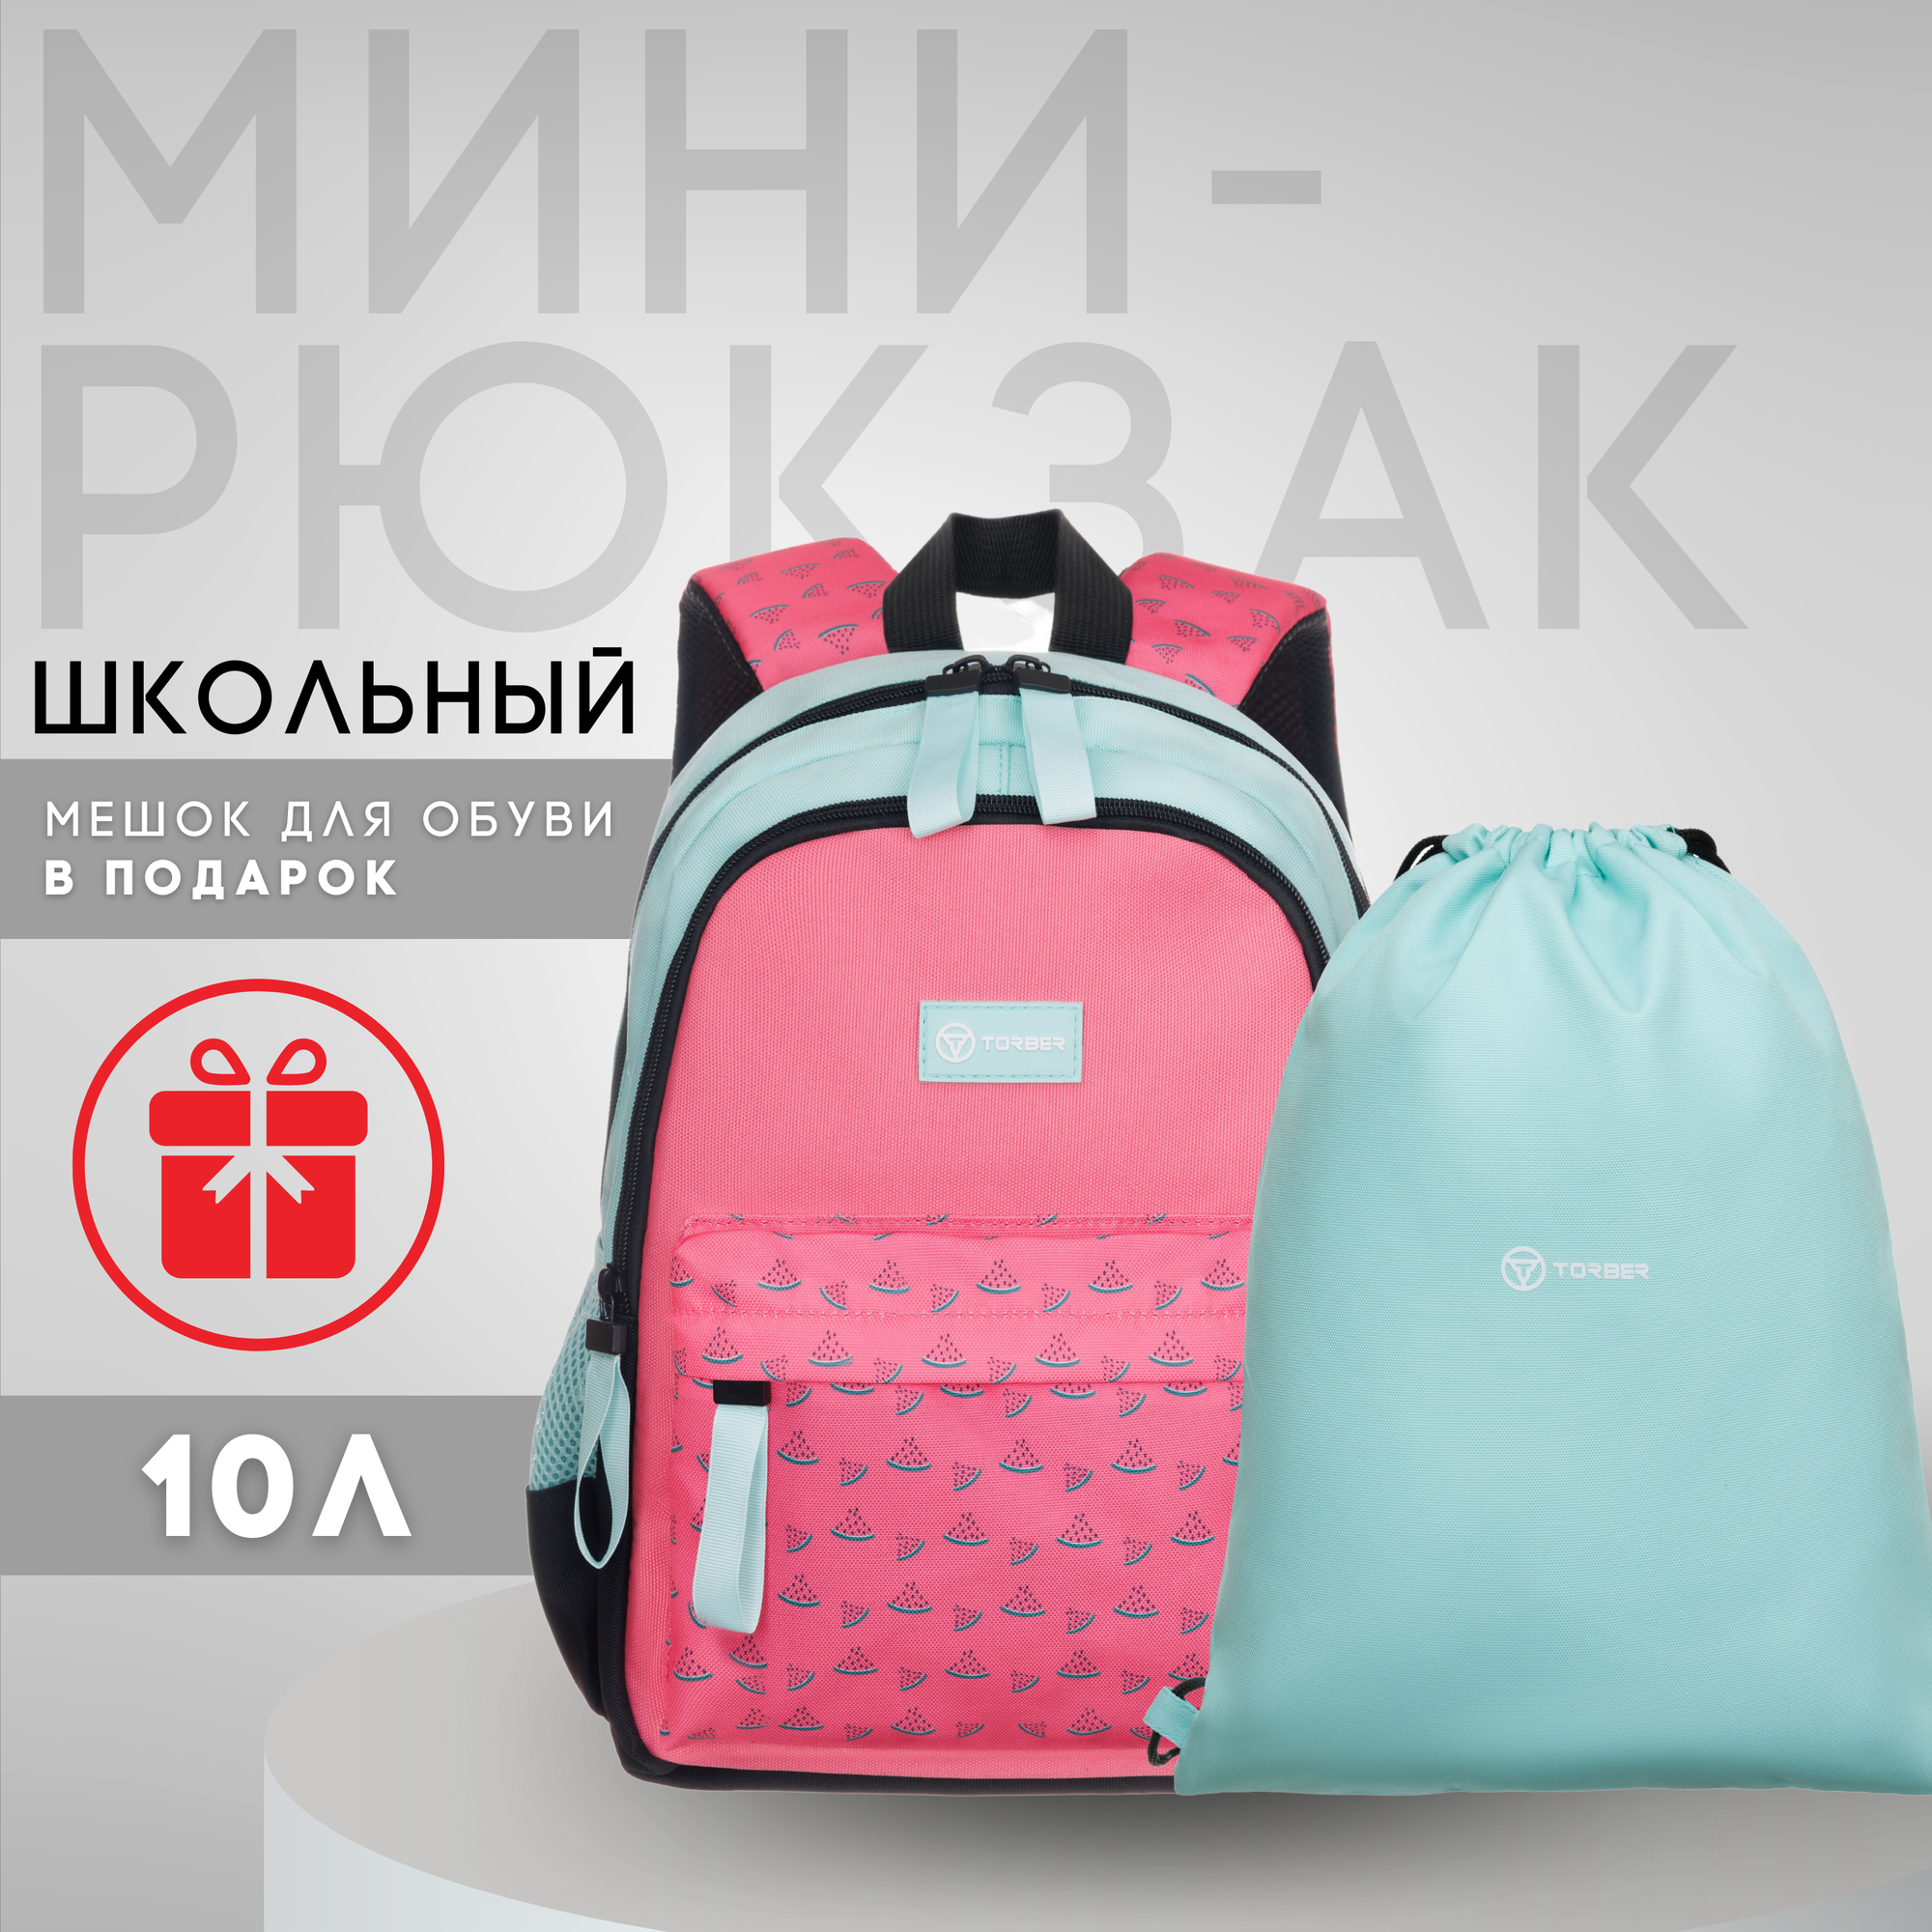 Мини рюкзак школьный для девочек TORBER CLASS X Mini, ортопедический, розовый/зеленый с орнаментом + Мешок для обуви в подарок!